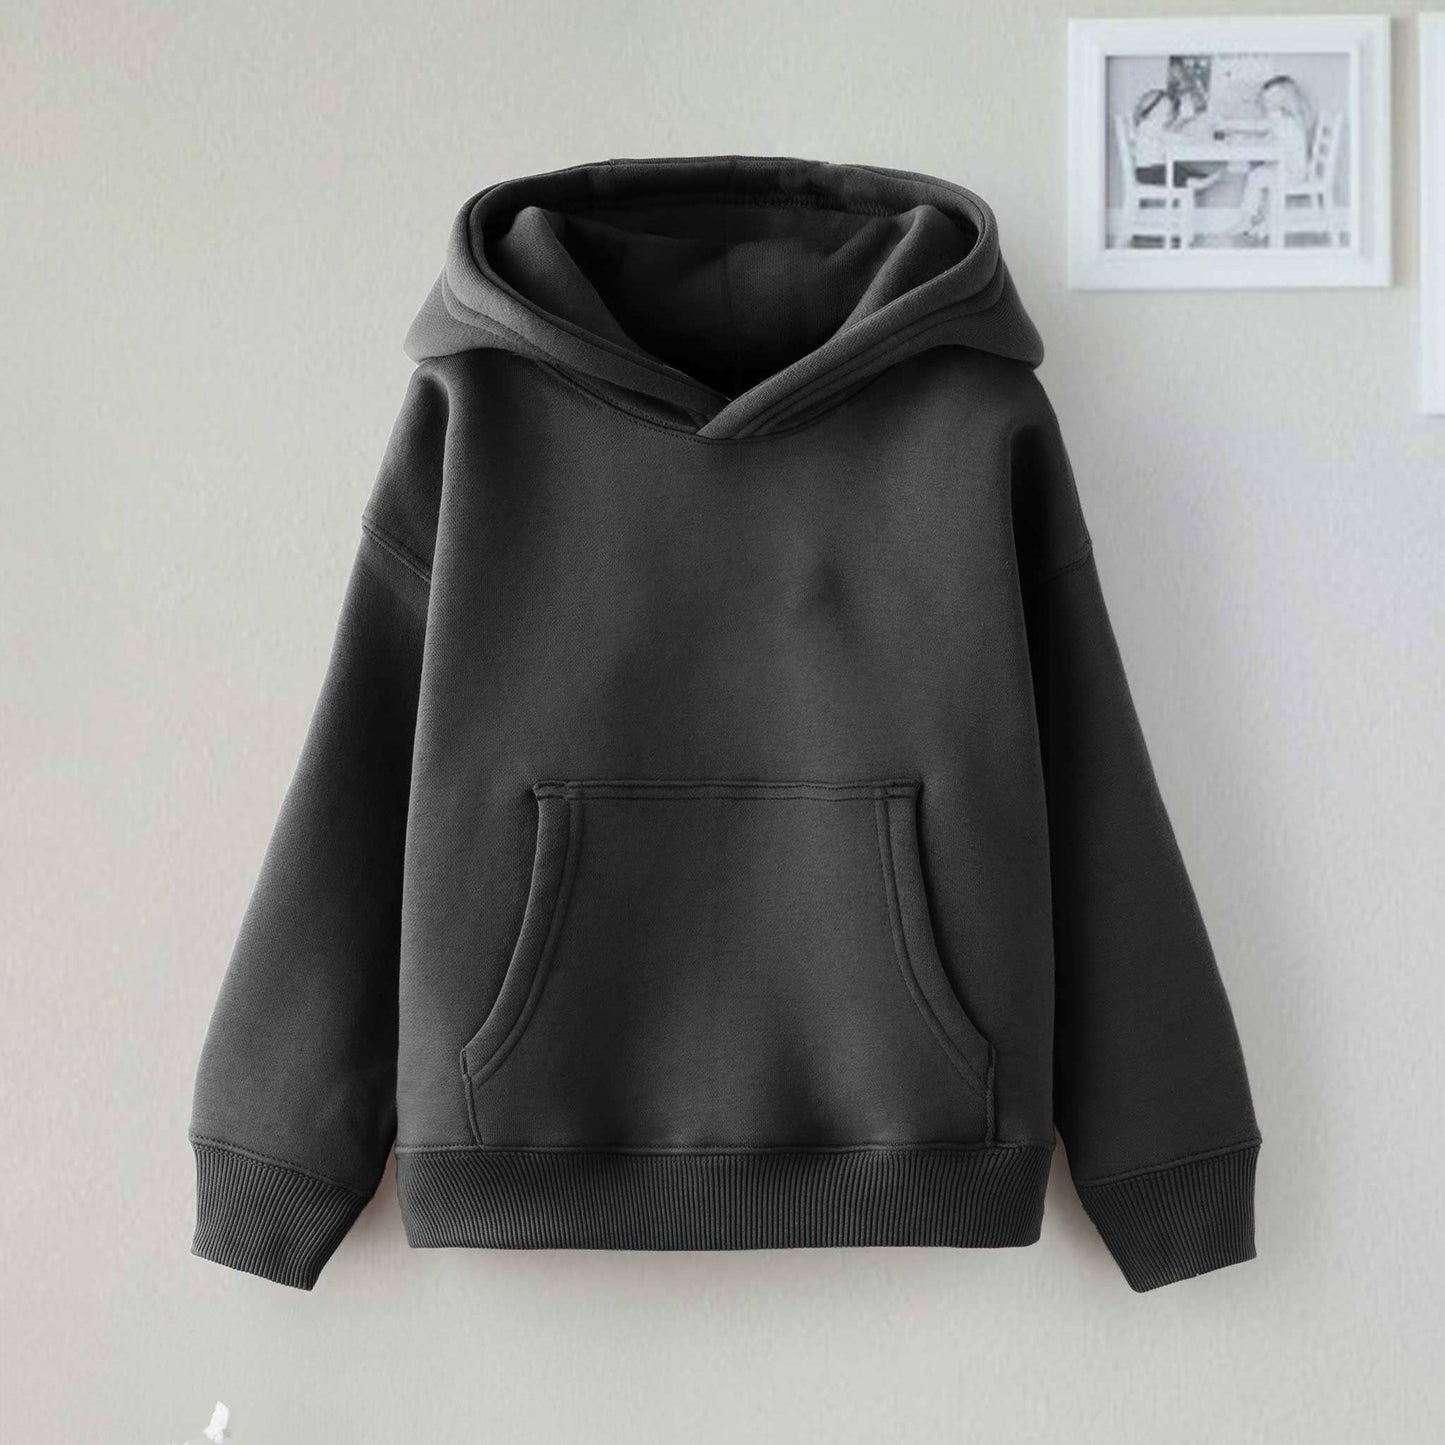 Dream Kid's Solid Design Long Sleeve Pullover Fleece Hoodie Boy's Pullover Hoodie Minhas Garments Smog Black 2-3 Years 